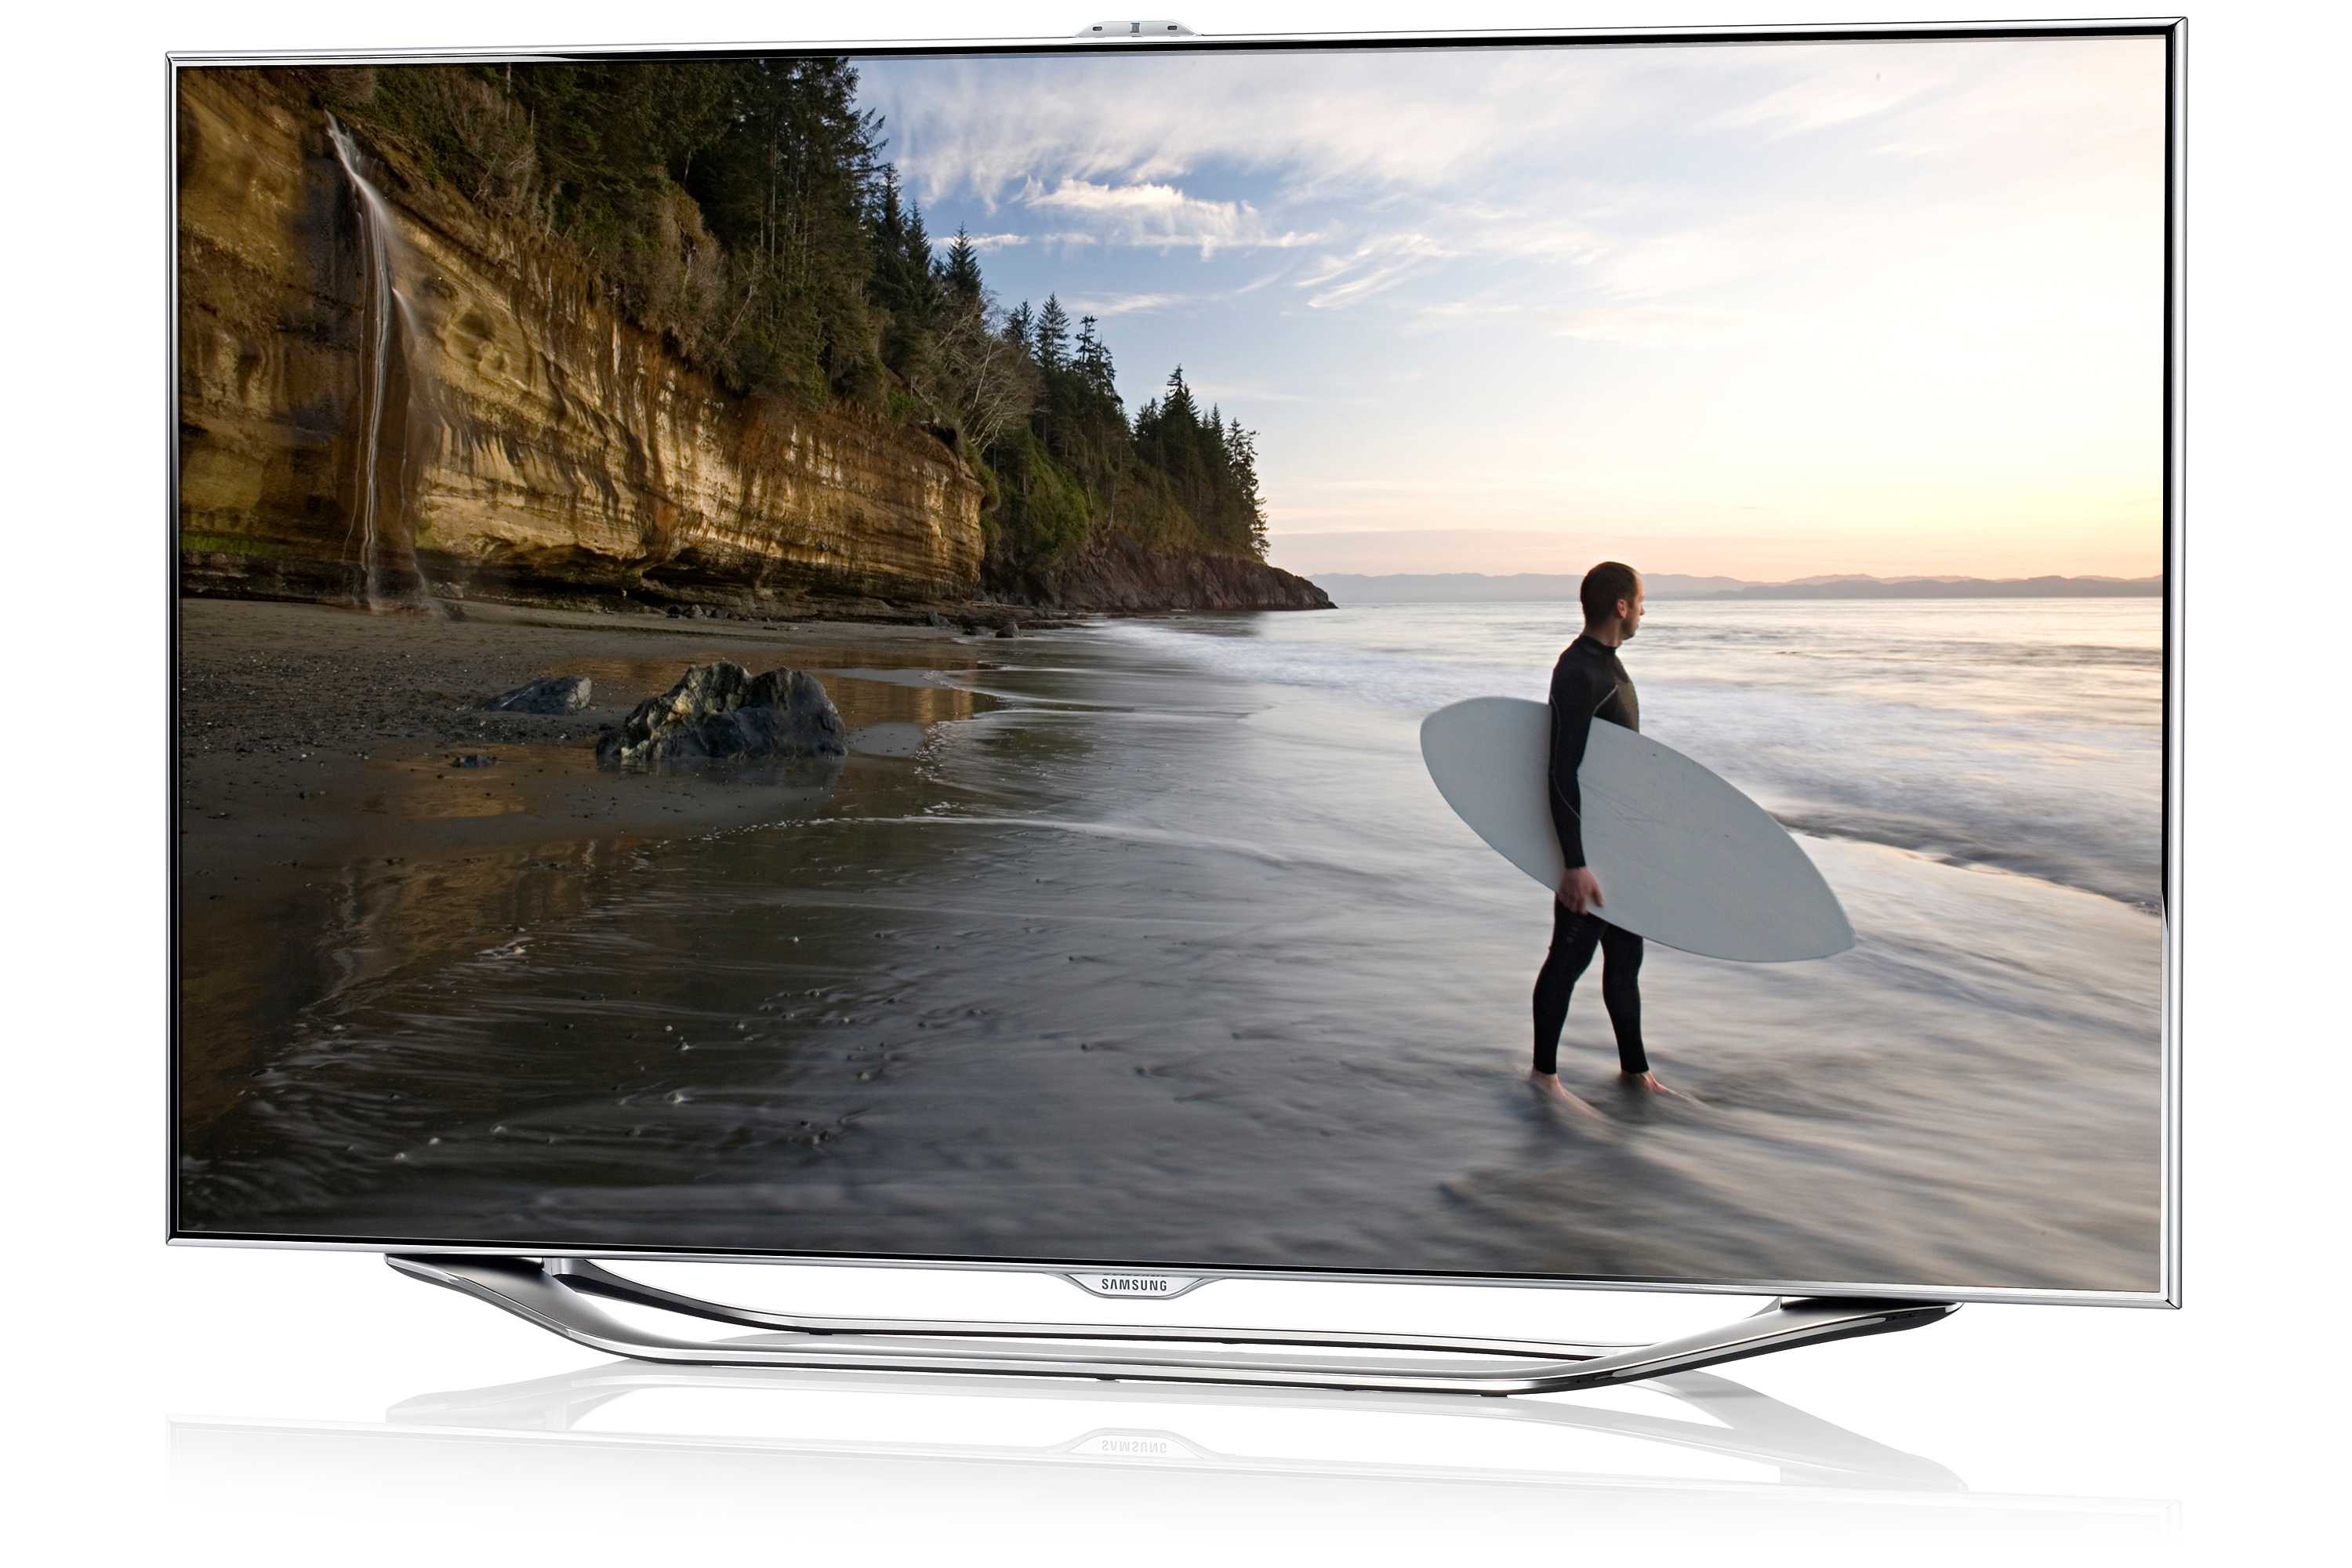 Samsung ue46d8000 - купить , скидки, цена, отзывы, обзор, характеристики - телевизоры